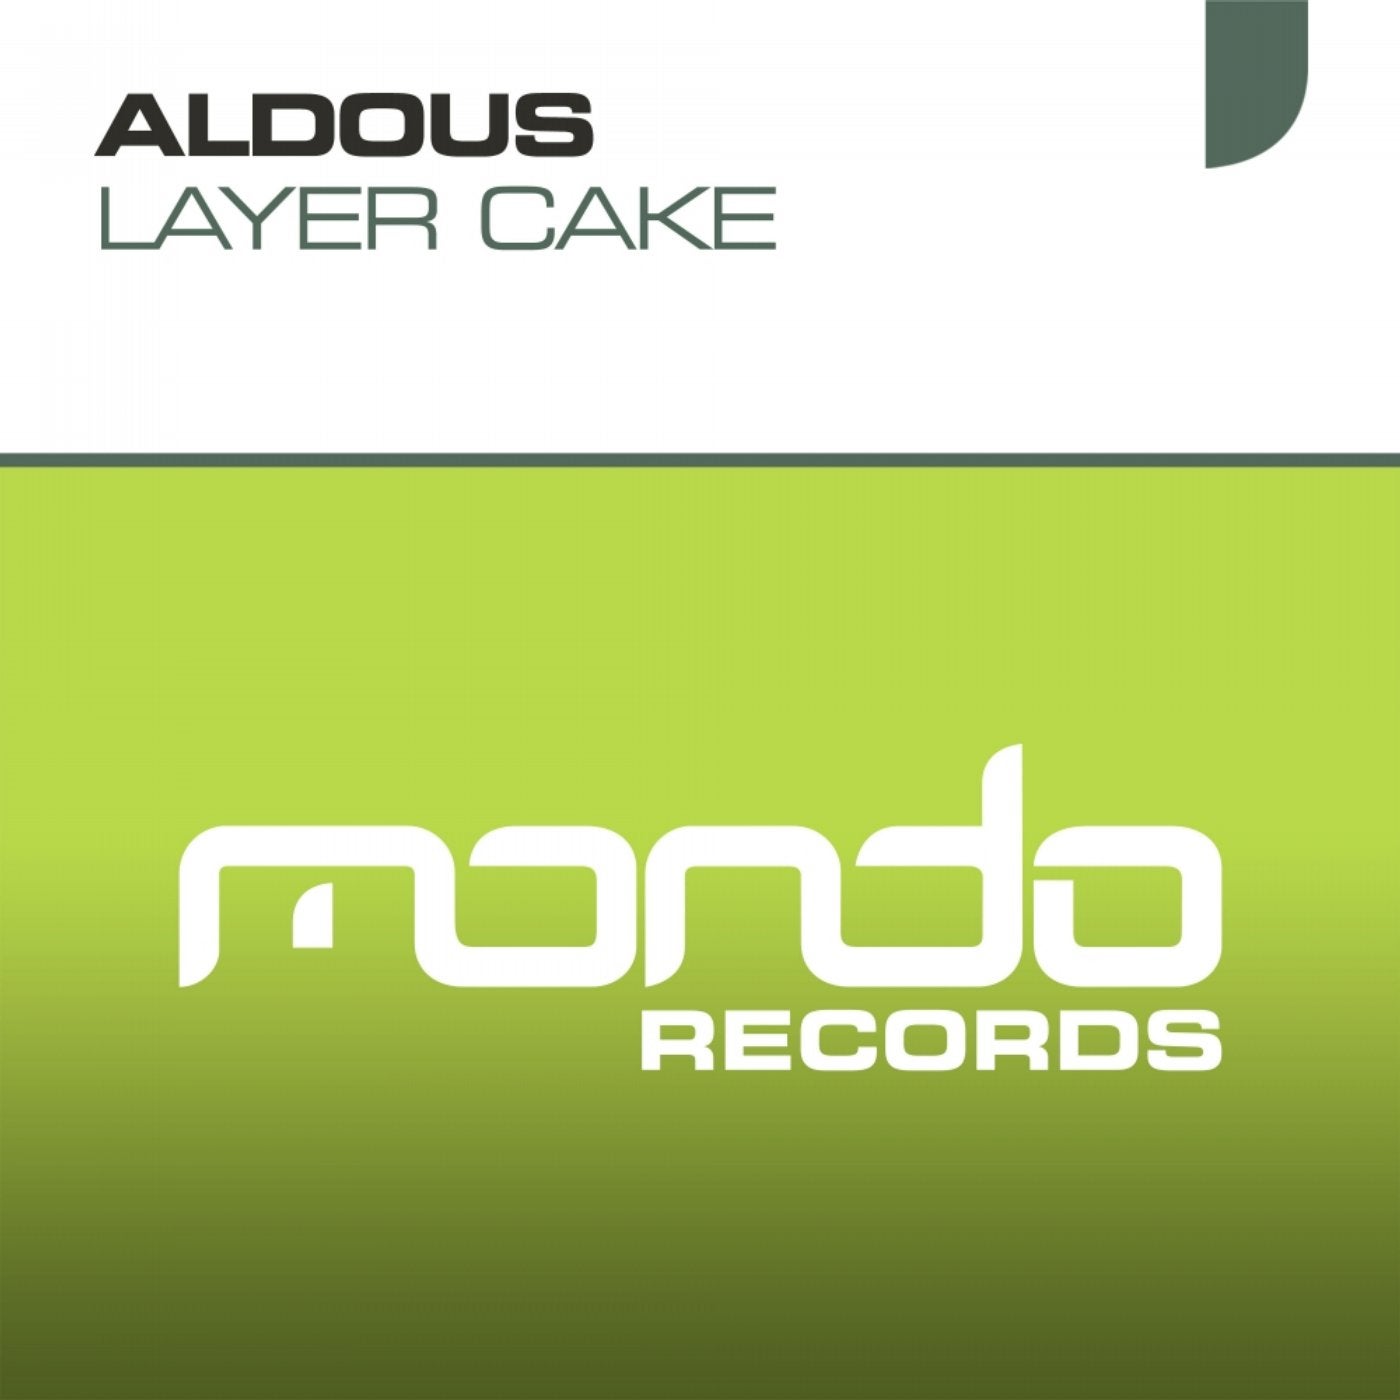 Amsha. Aldous Sound. Aldous электронная музыка альбомы. Aldous - wait for me (Original Mix). Flac 16